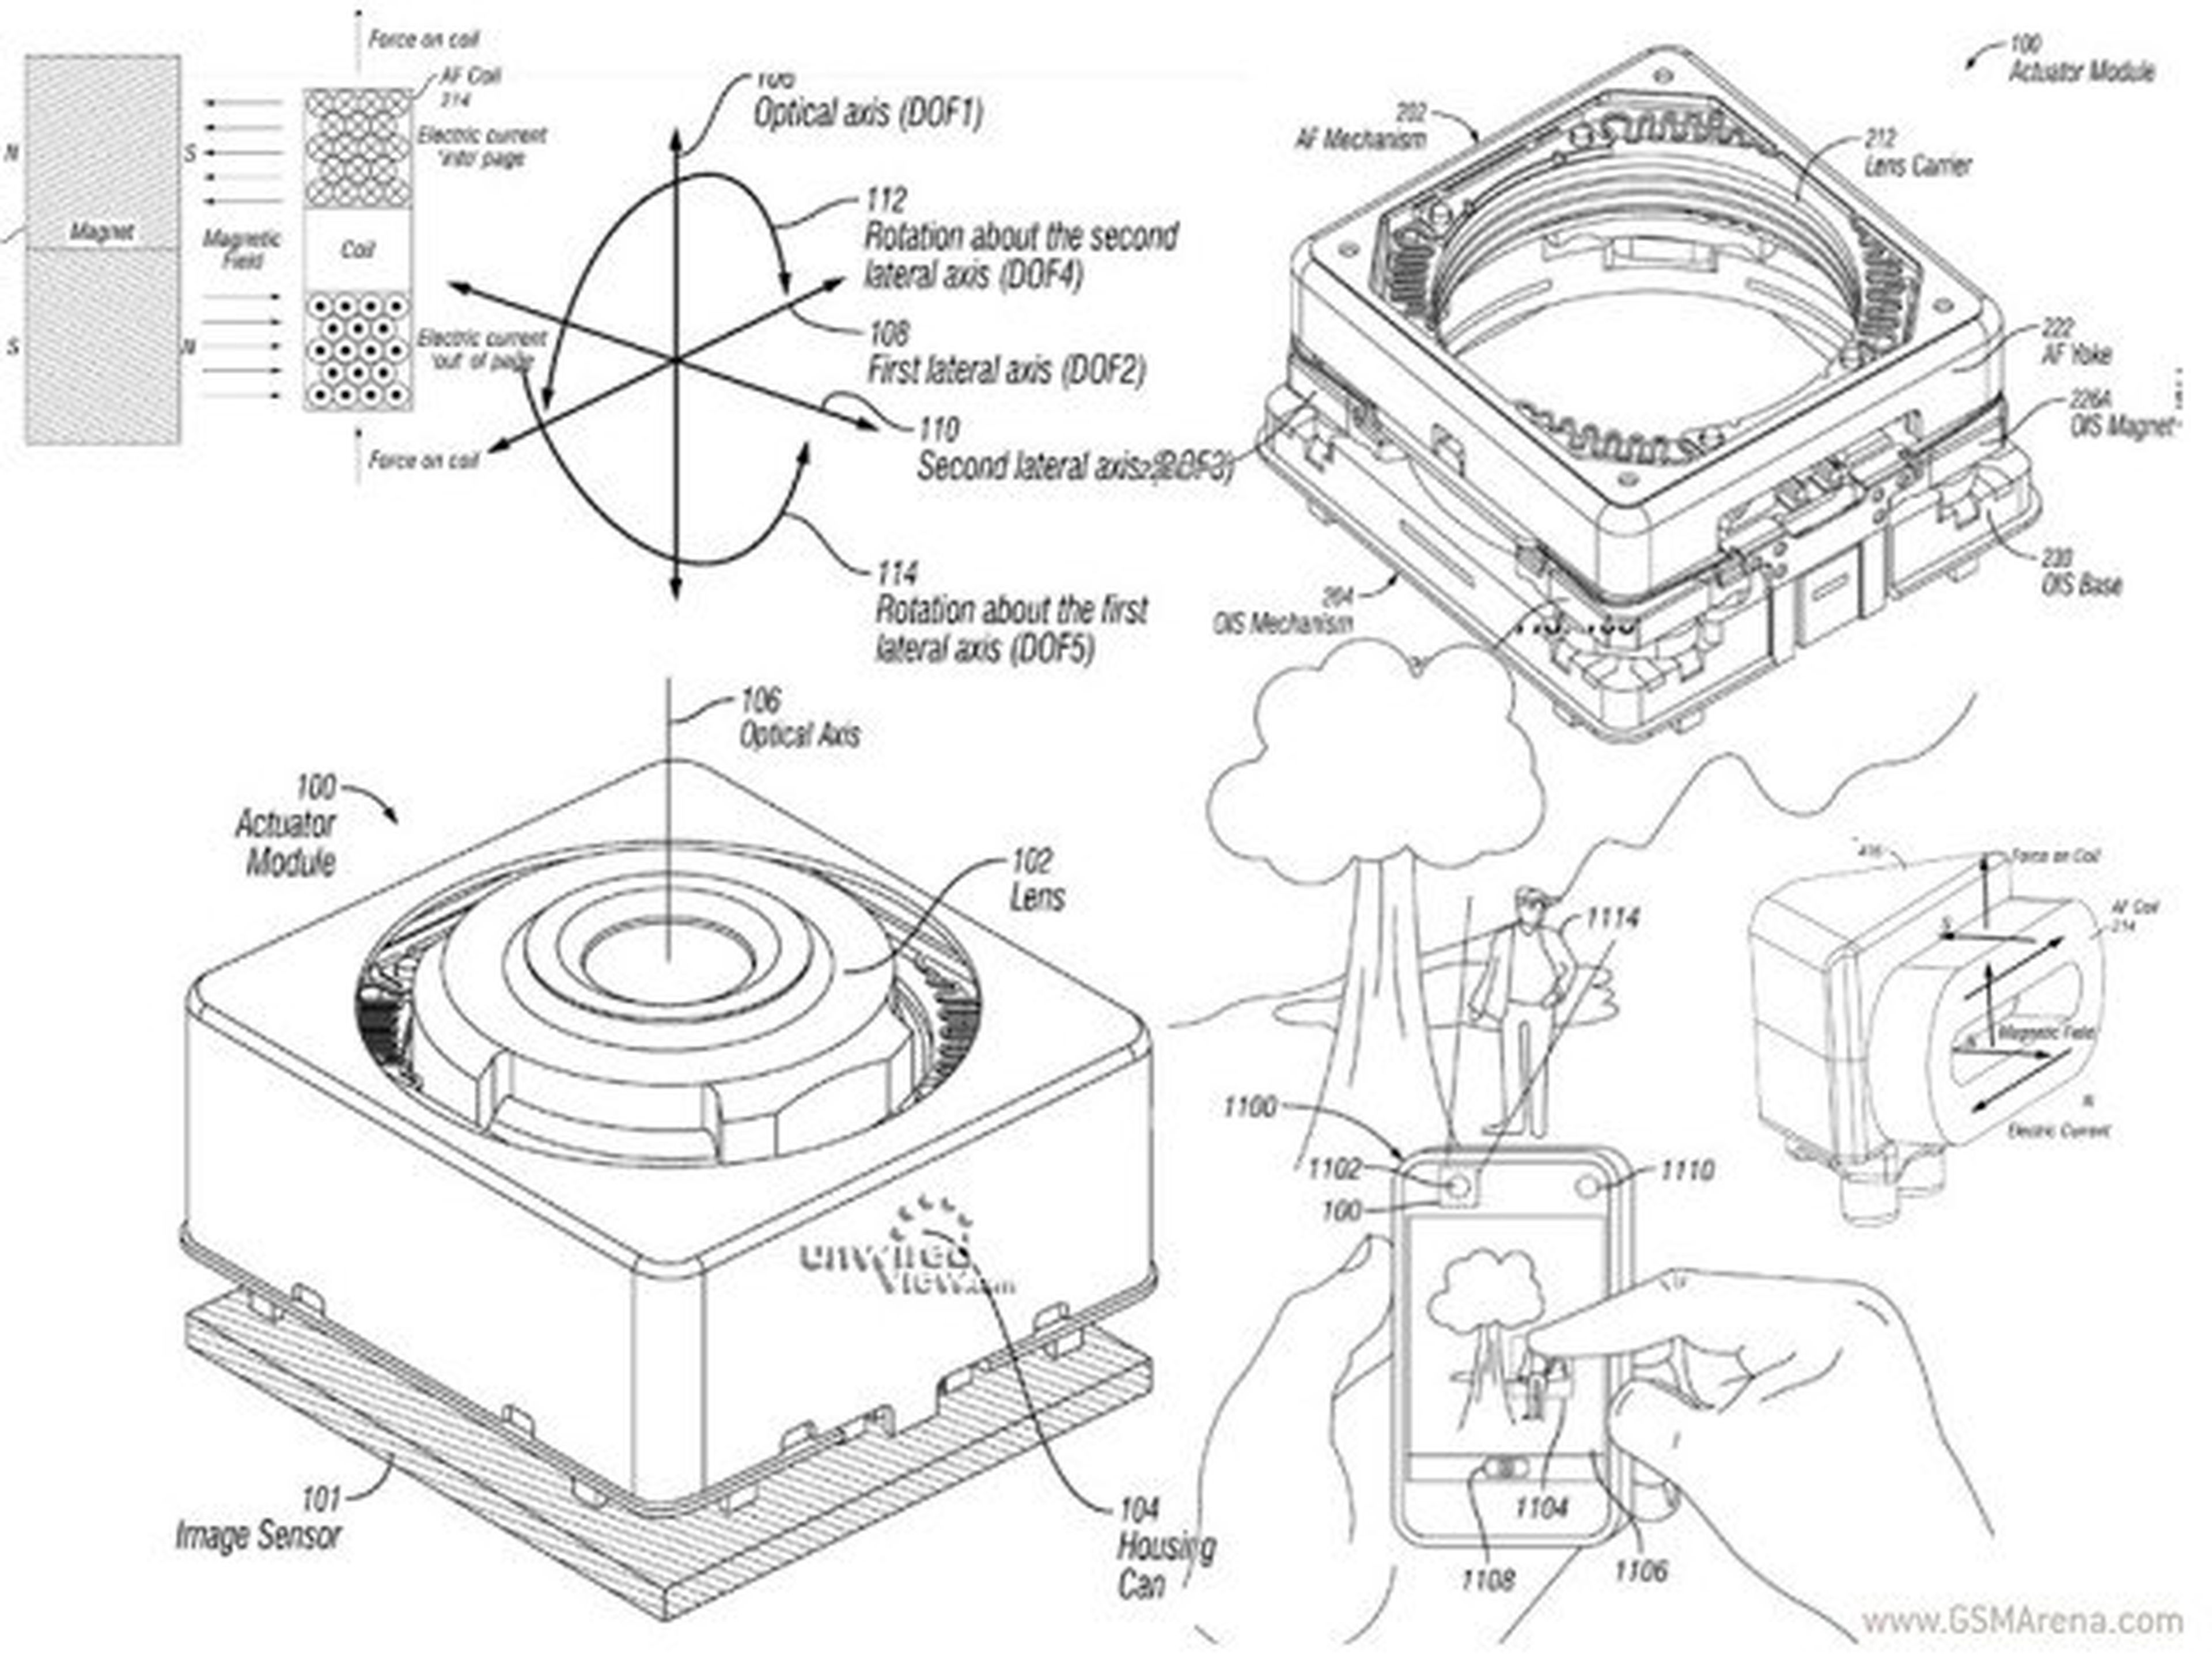 Patente de Apple sobre estabilización óptica en el iPhone